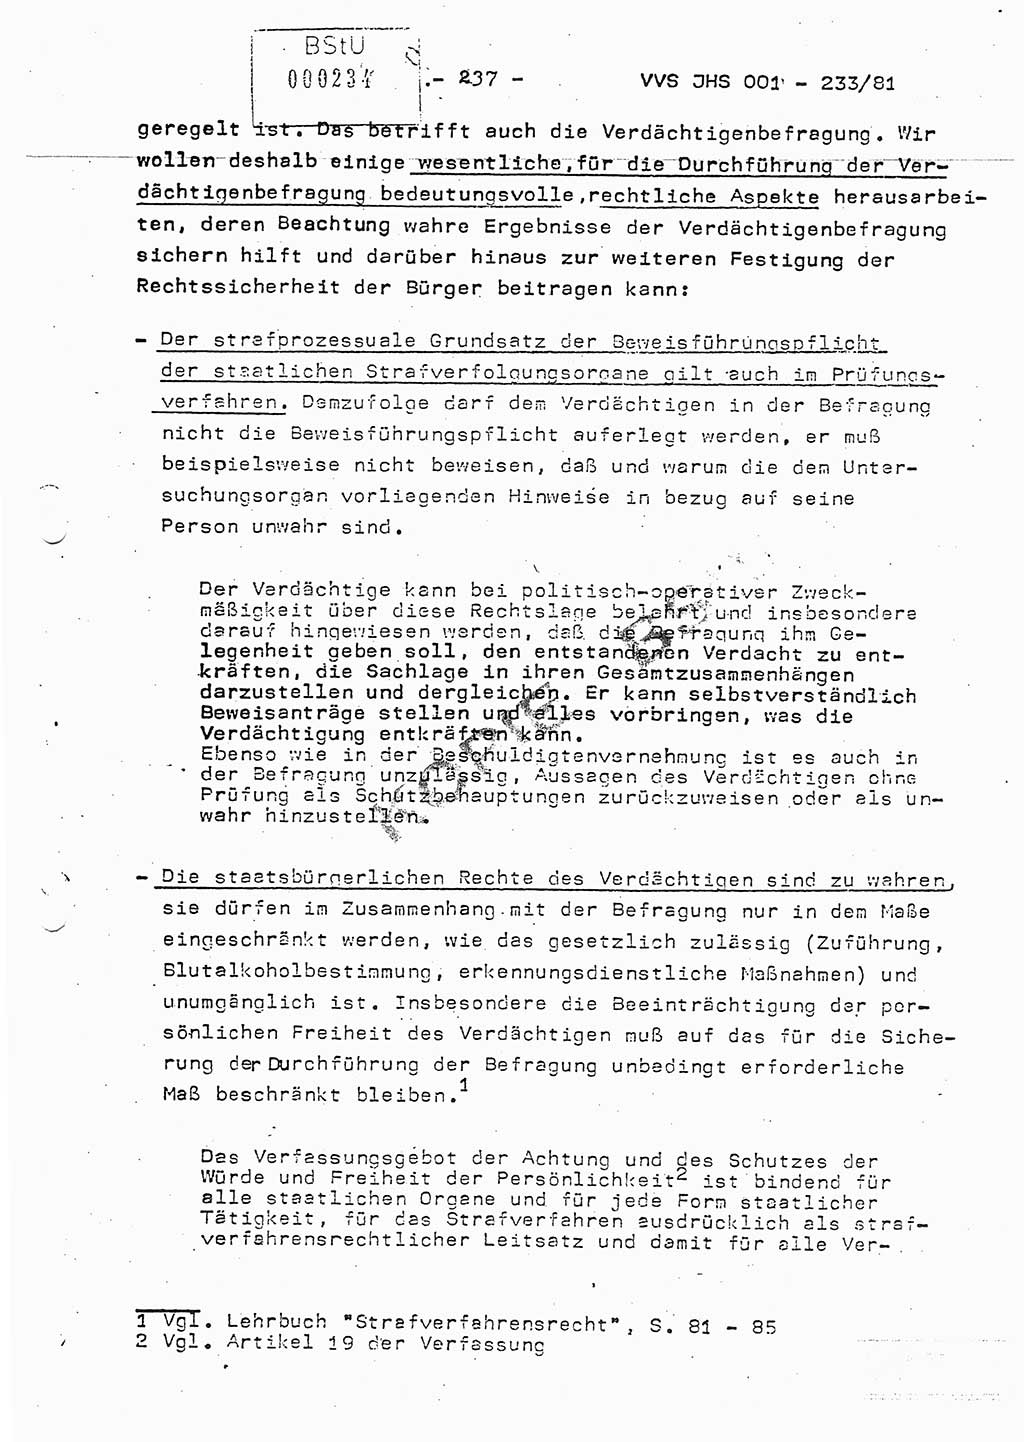 Dissertation Oberstleutnant Horst Zank (JHS), Oberstleutnant Dr. Karl-Heinz Knoblauch (JHS), Oberstleutnant Gustav-Adolf Kowalewski (HA Ⅸ), Oberstleutnant Wolfgang Plötner (HA Ⅸ), Ministerium für Staatssicherheit (MfS) [Deutsche Demokratische Republik (DDR)], Juristische Hochschule (JHS), Vertrauliche Verschlußsache (VVS) o001-233/81, Potsdam 1981, Blatt 237 (Diss. MfS DDR JHS VVS o001-233/81 1981, Bl. 237)